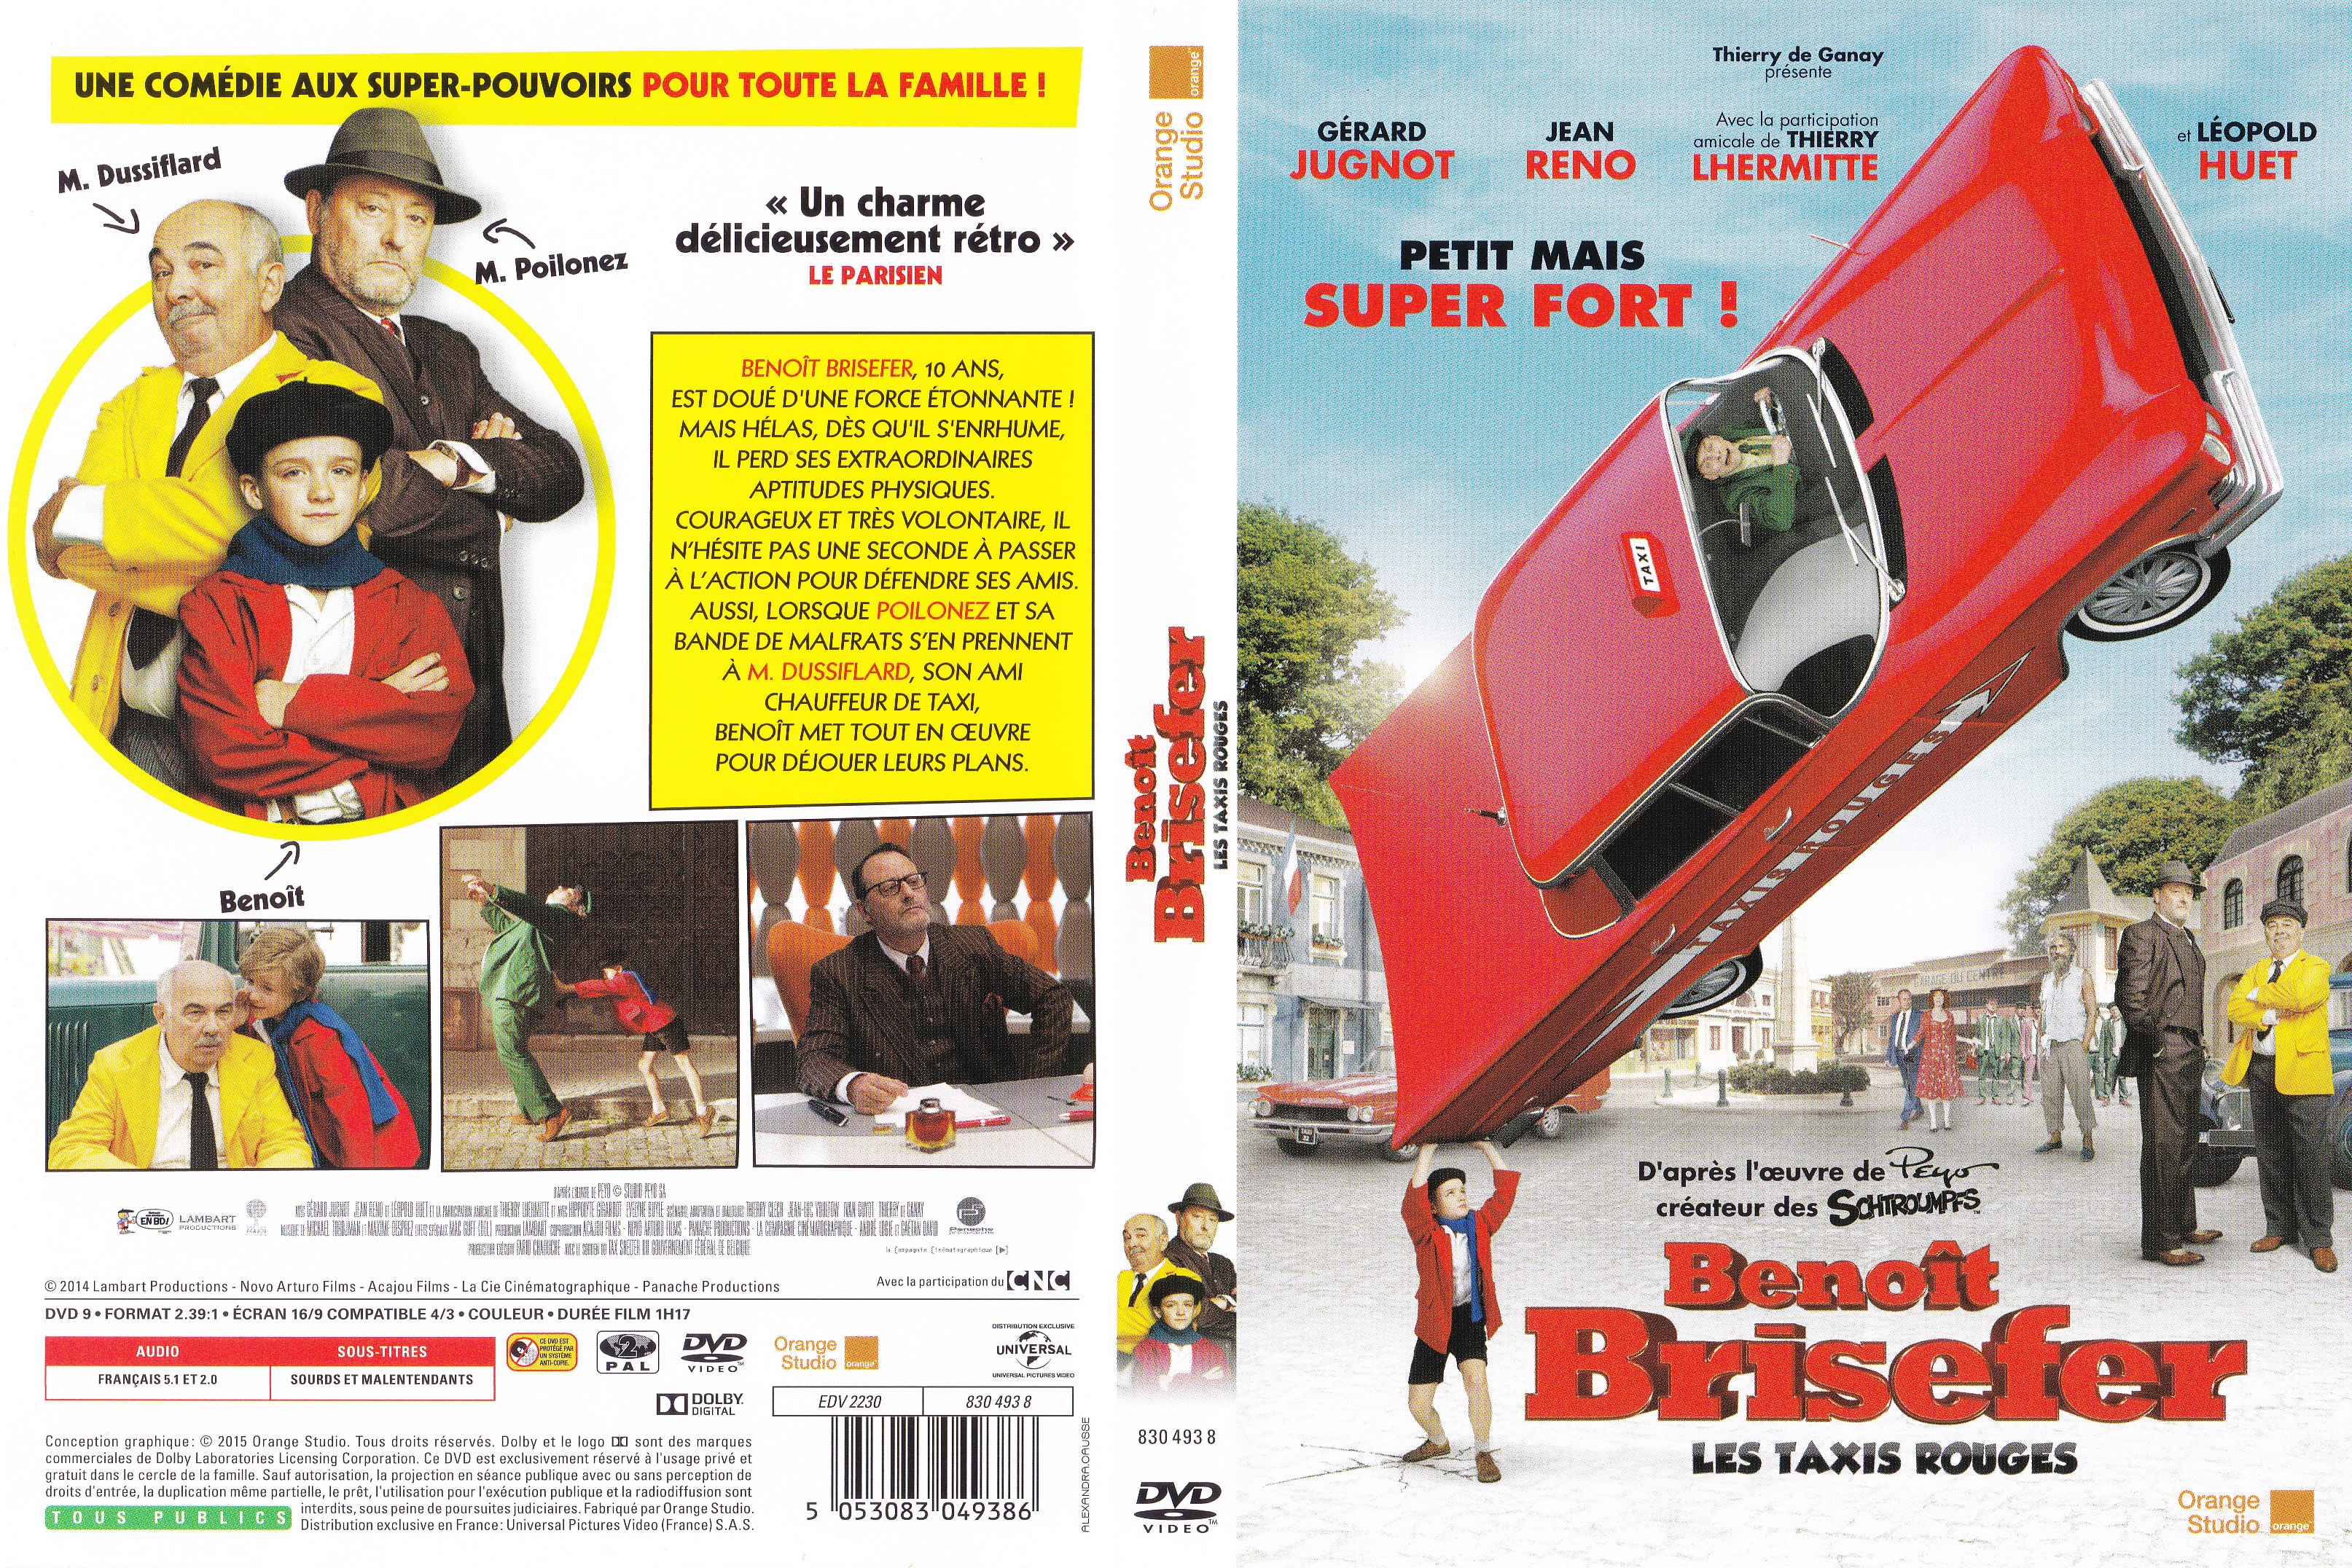 Jaquette DVD Benot Brisefer : les Taxis Rouges